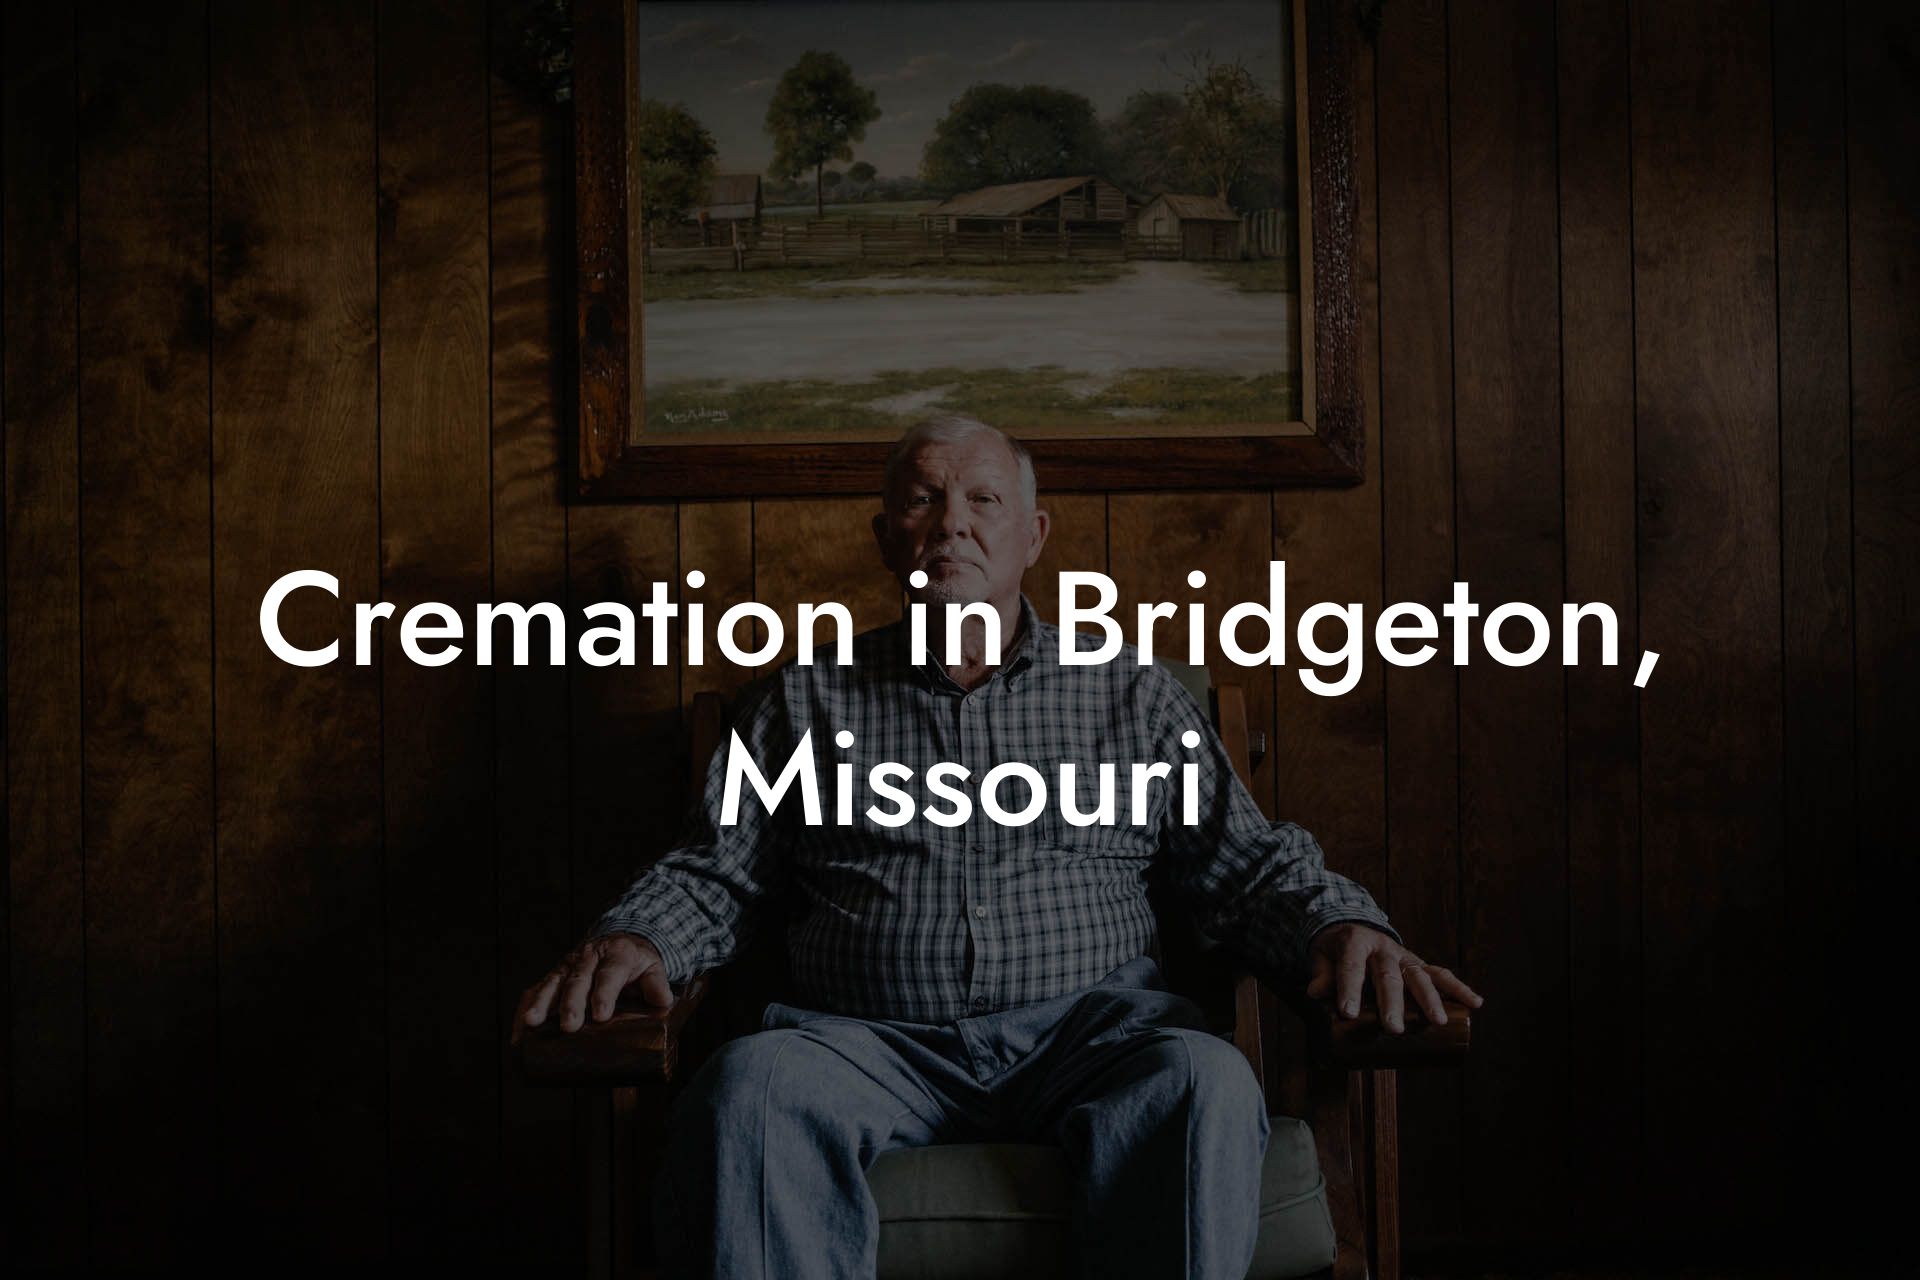 Cremation in Bridgeton, Missouri